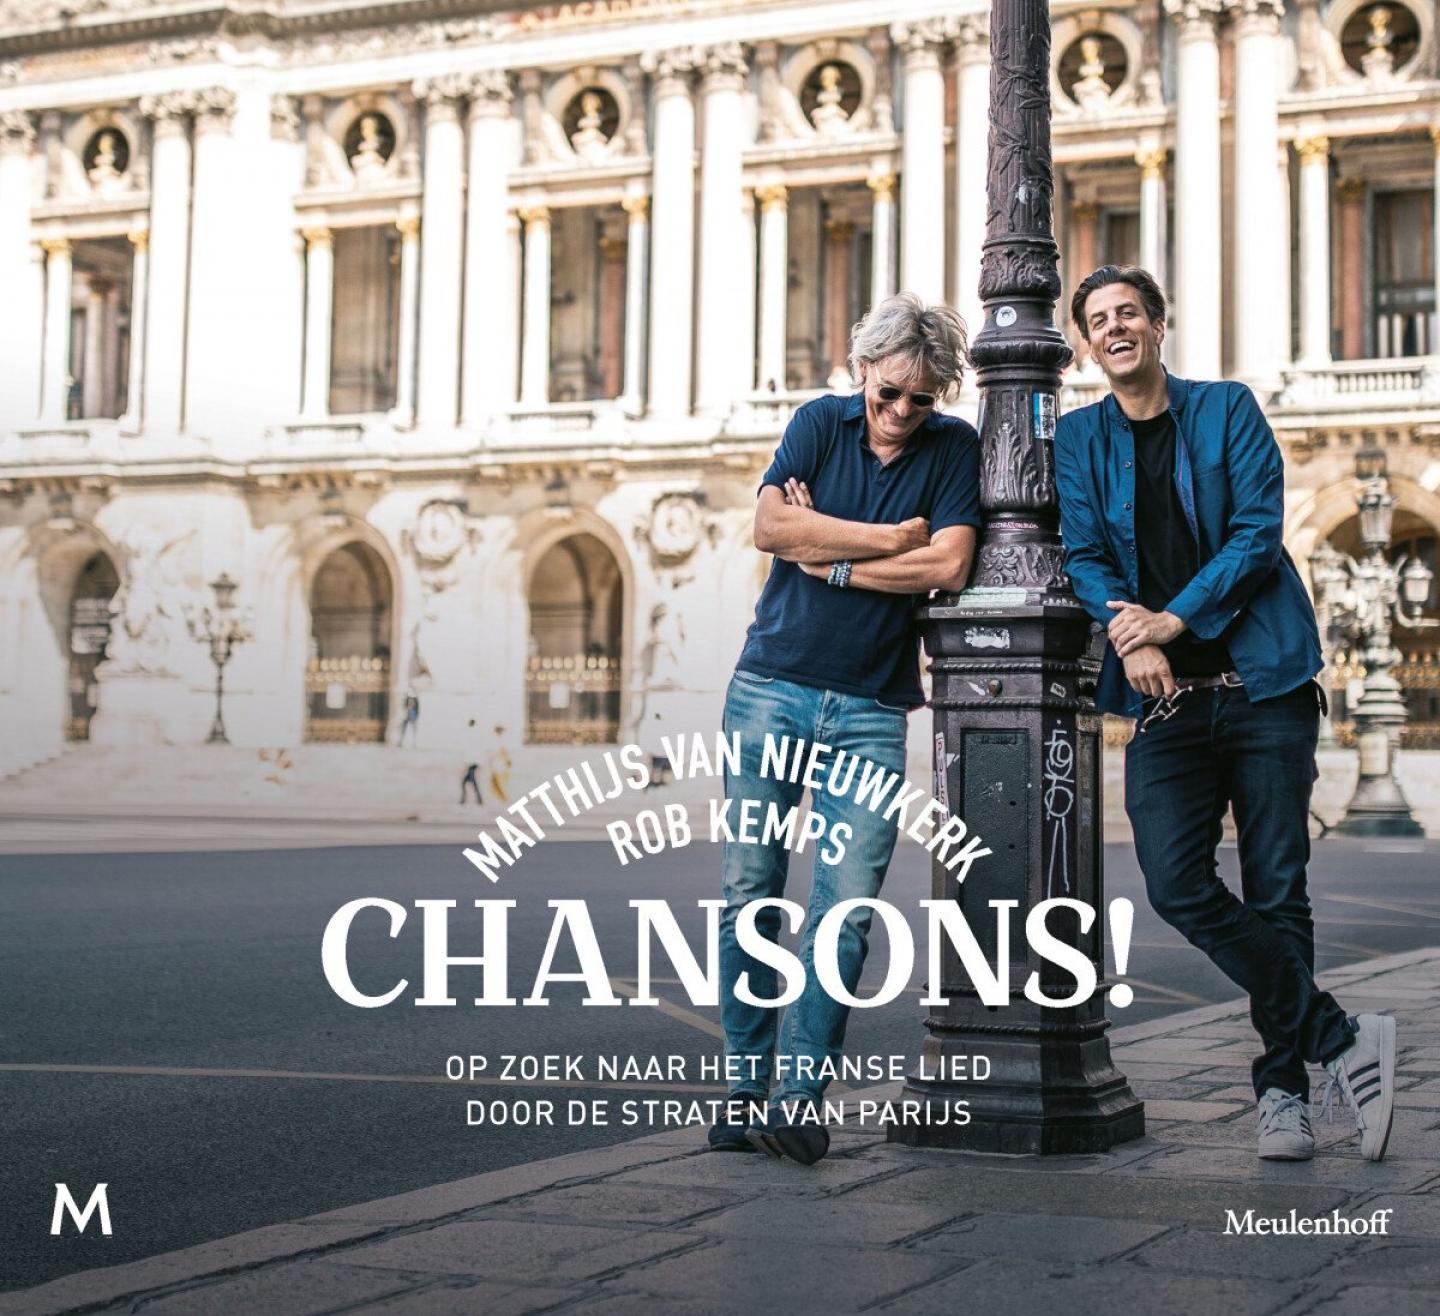 Nieuwkerk, Matthijs van; Kemps, Rob - Chansons! Op zoek naar het Franse lied door de straten van Parijs